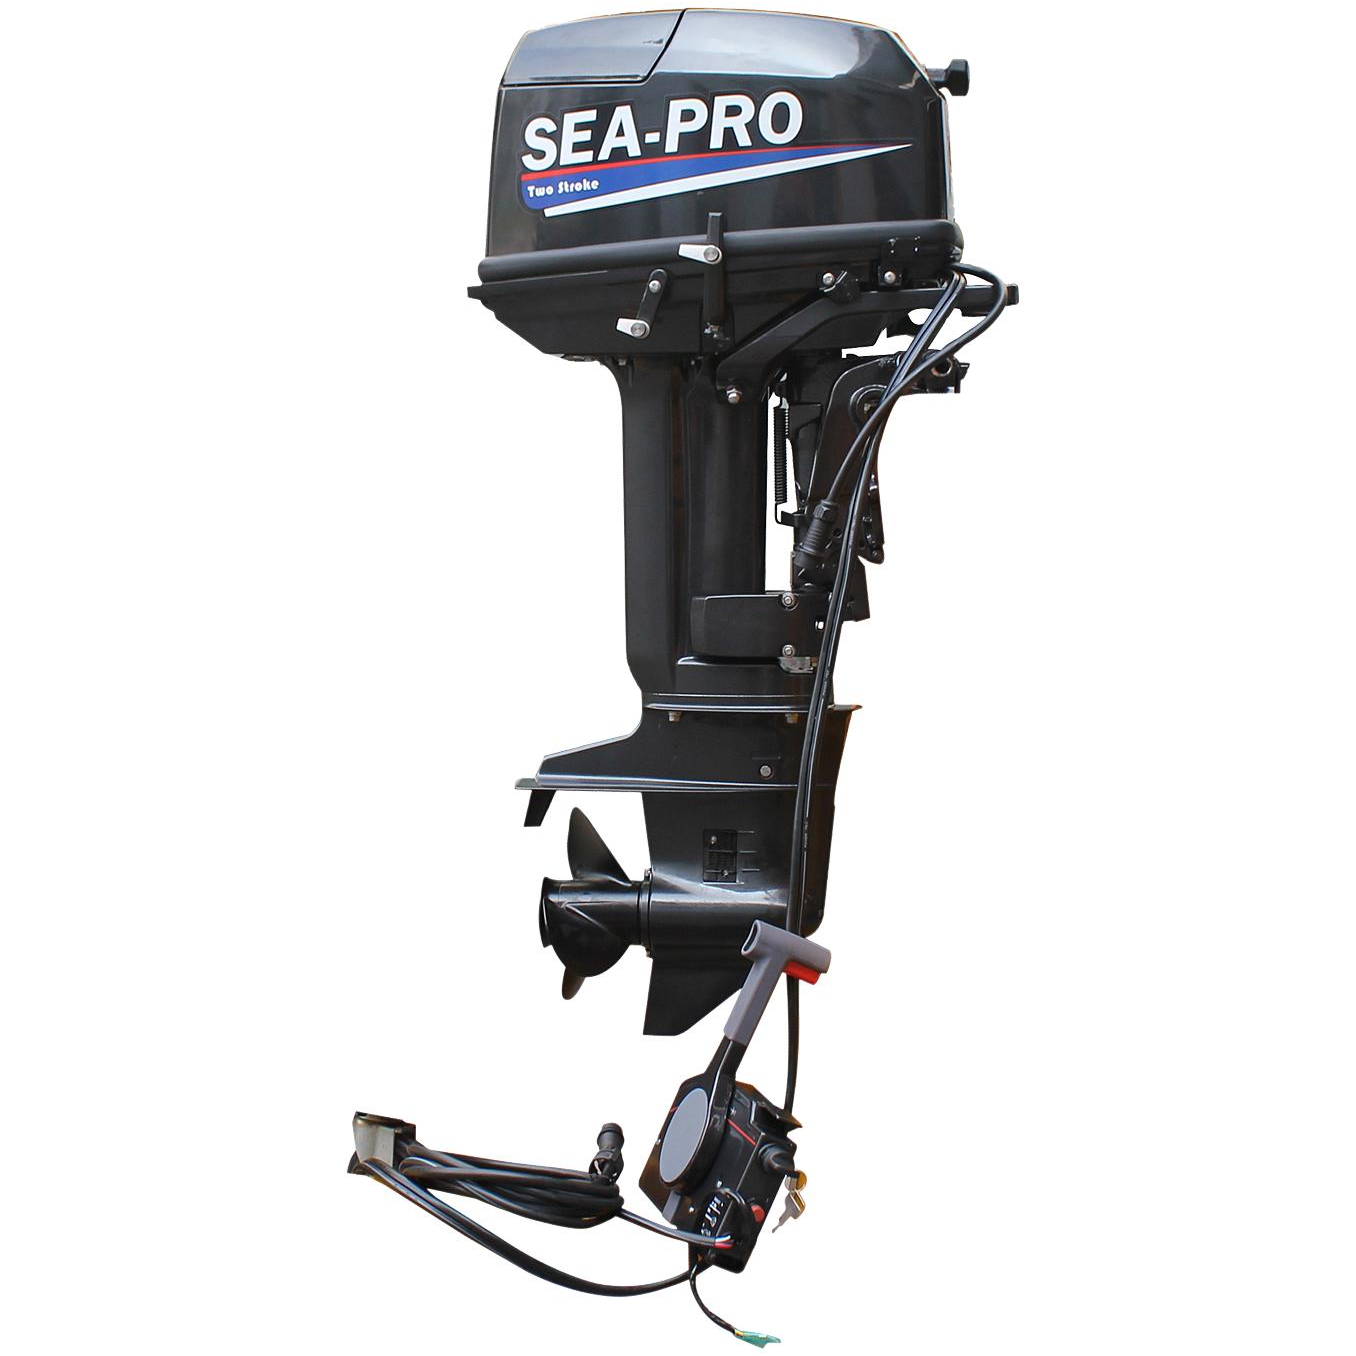 Лодочный мотор Sea-Pro т 30s. Лодочный мотор Sea-Pro t 30 s. Лодочный мотор Sea Pro t 30s&e. Мотор Sea Pro 30 s&e. Купить моторы в кредит